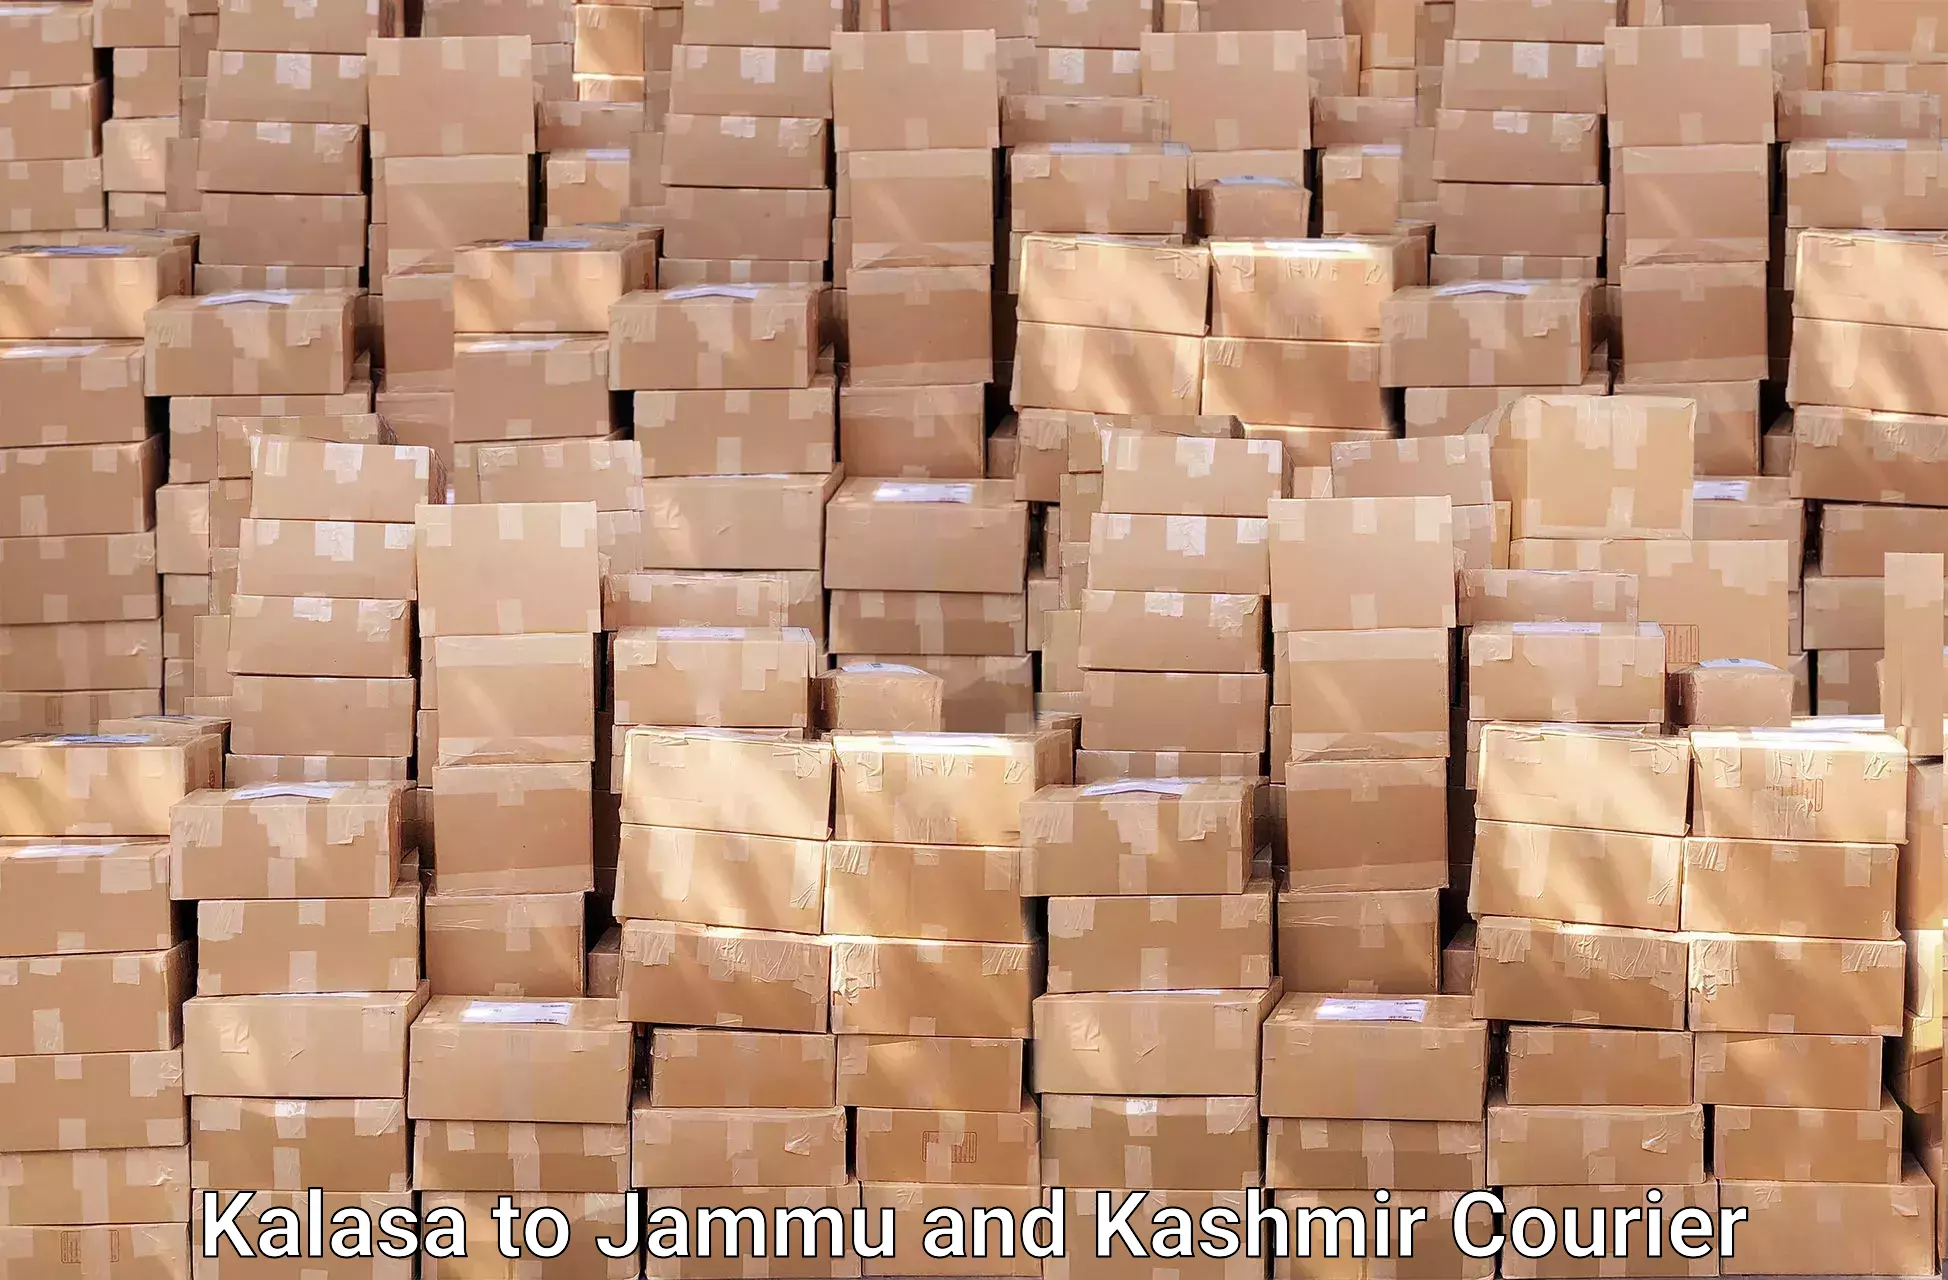 Furniture moving services Kalasa to Jammu and Kashmir